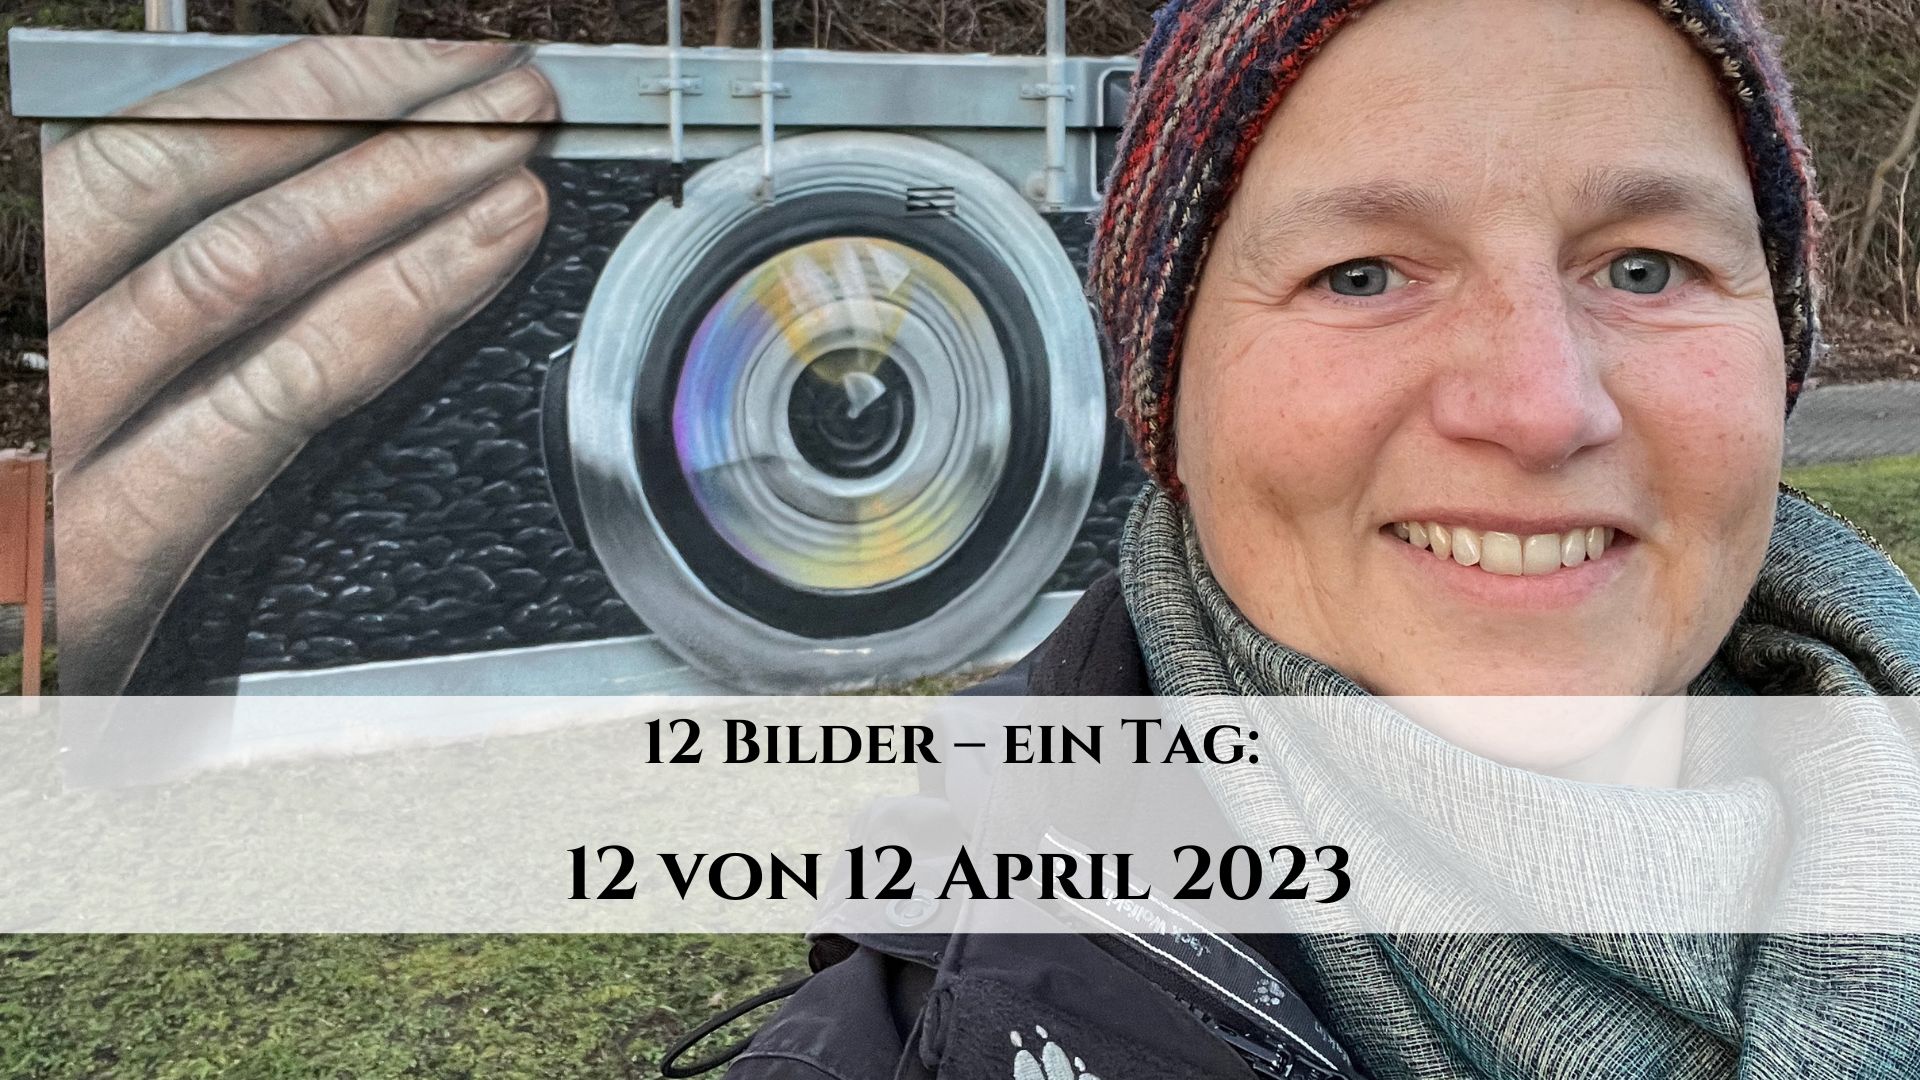 12 von 12 April 2023: 12 Bilder – ein Tag